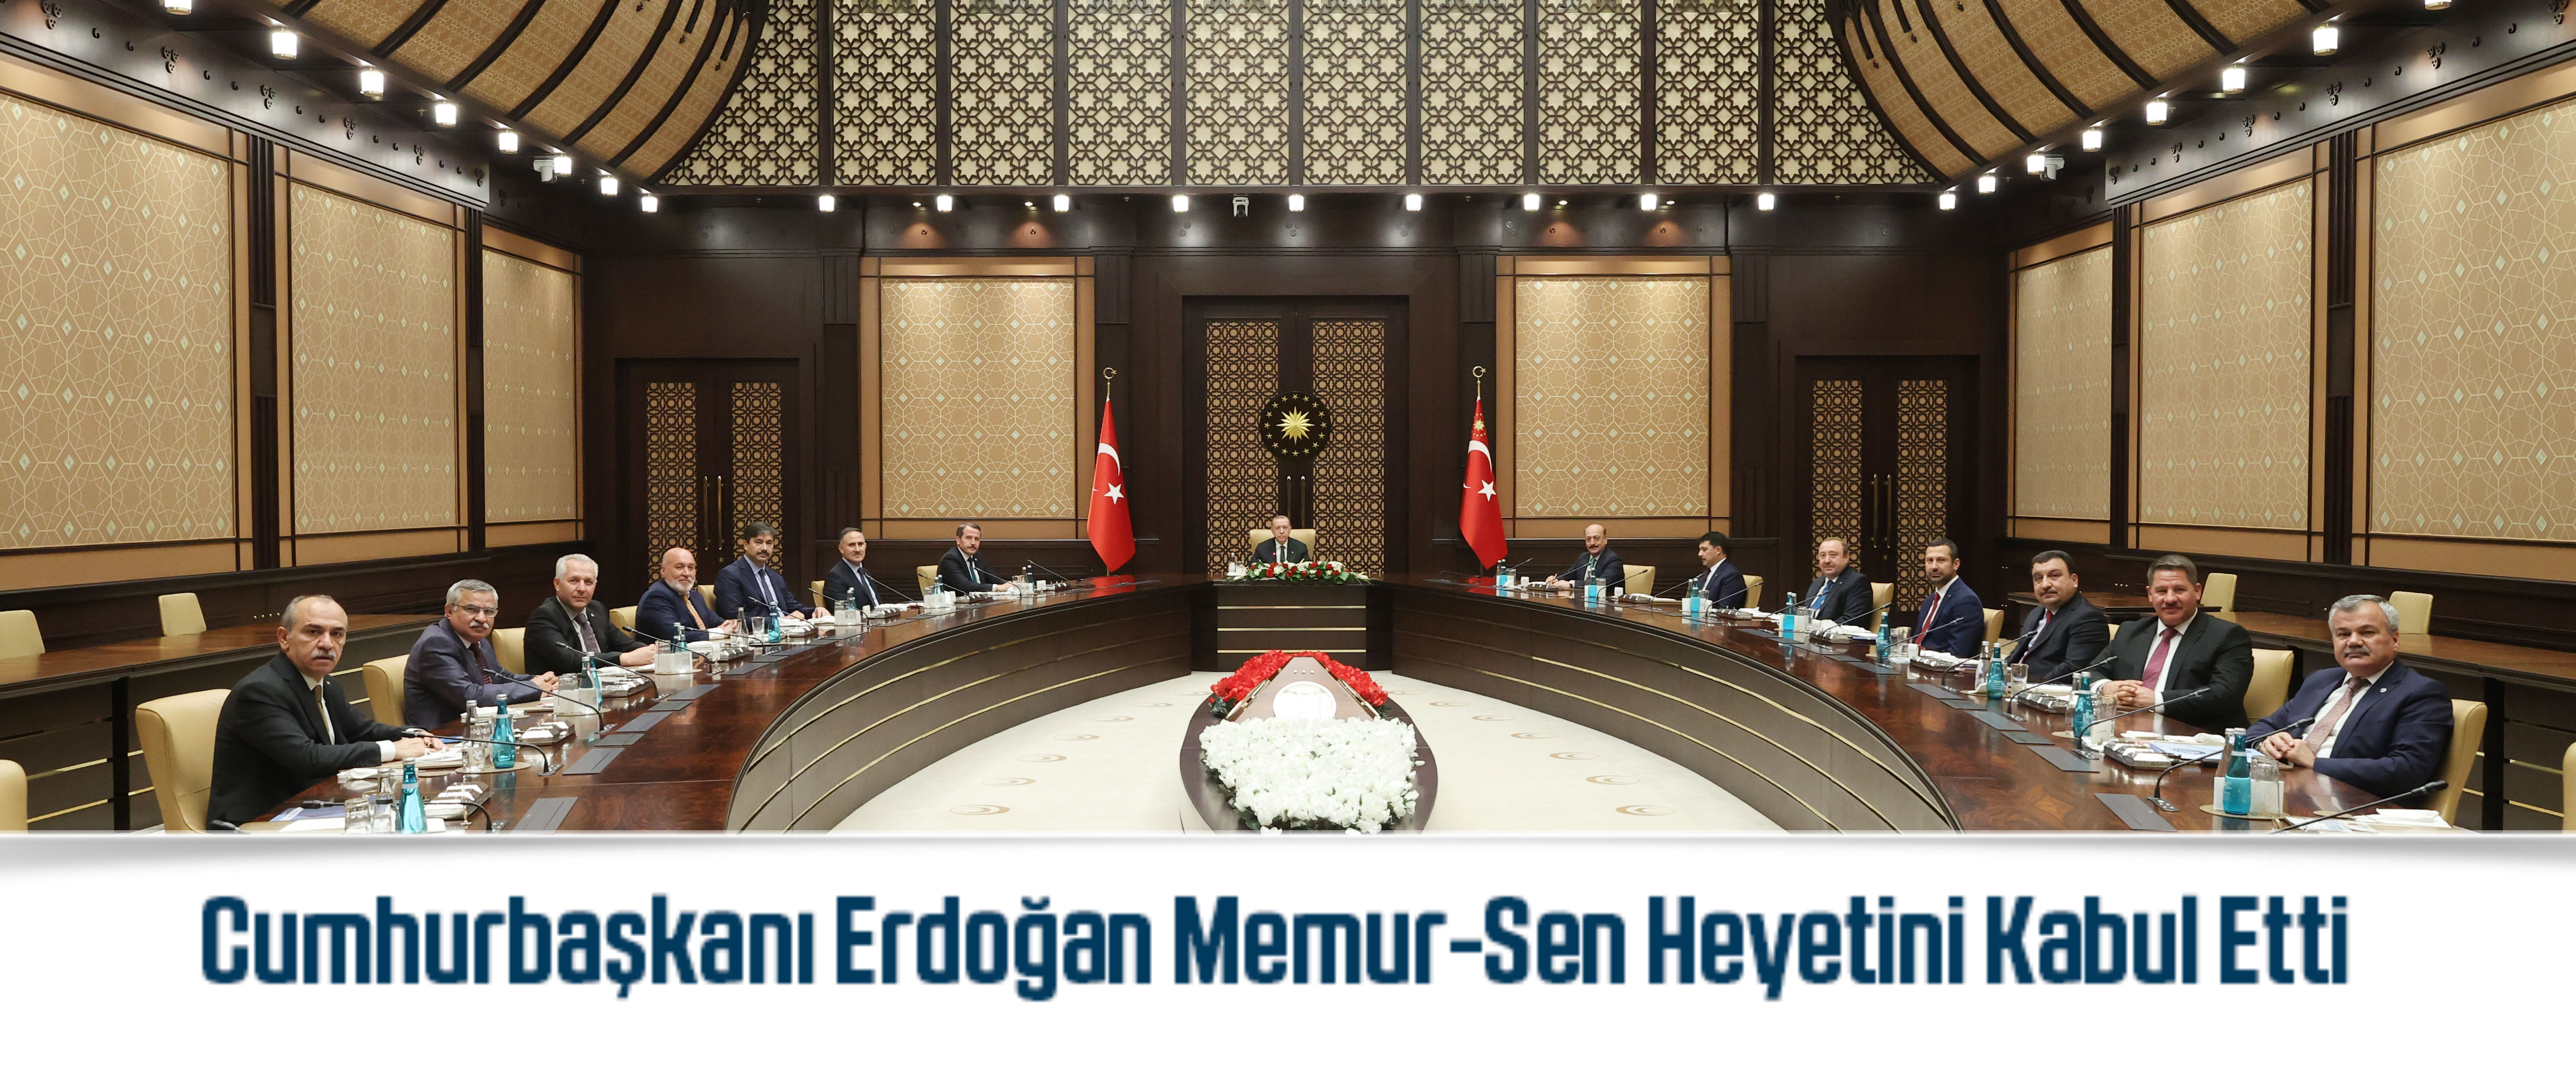 Cumhurbaşkanı Erdoğan Memur-Sen Heyetini Kabul Etti